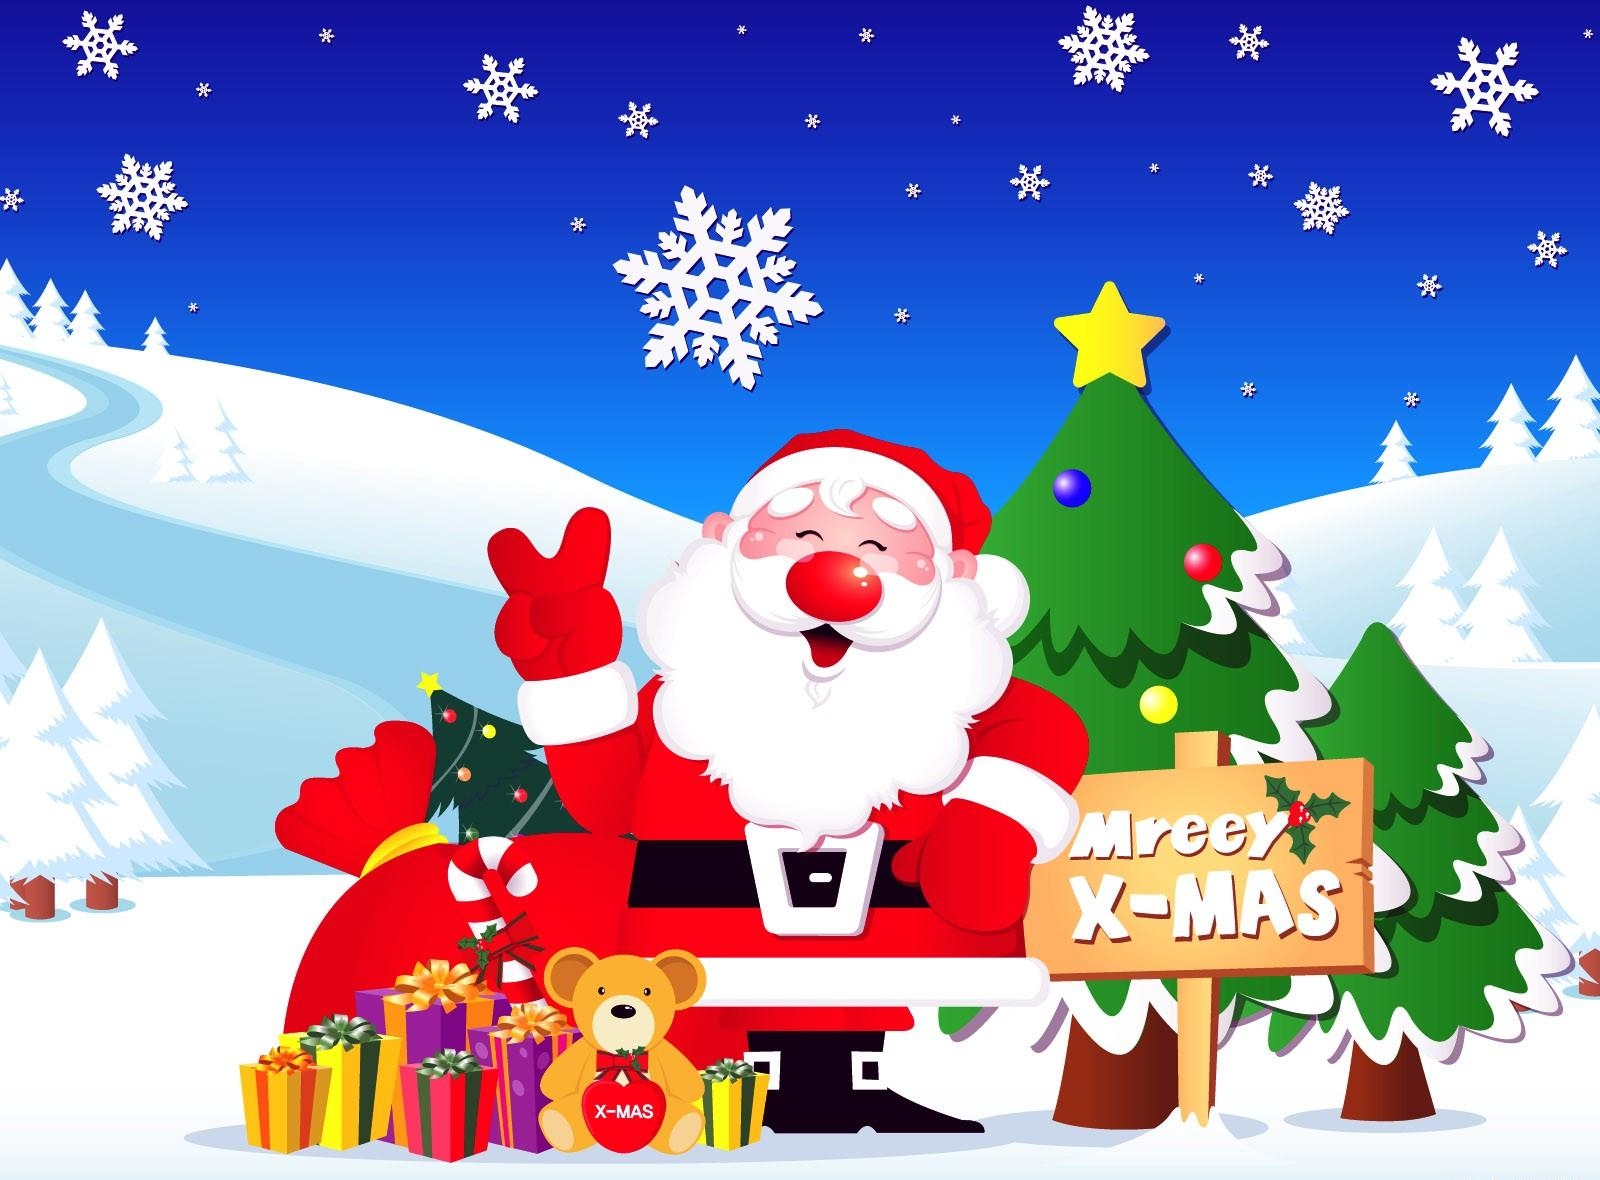 santa claus, presents, holidays, fir trees, snowflakes, road, gifts 4K